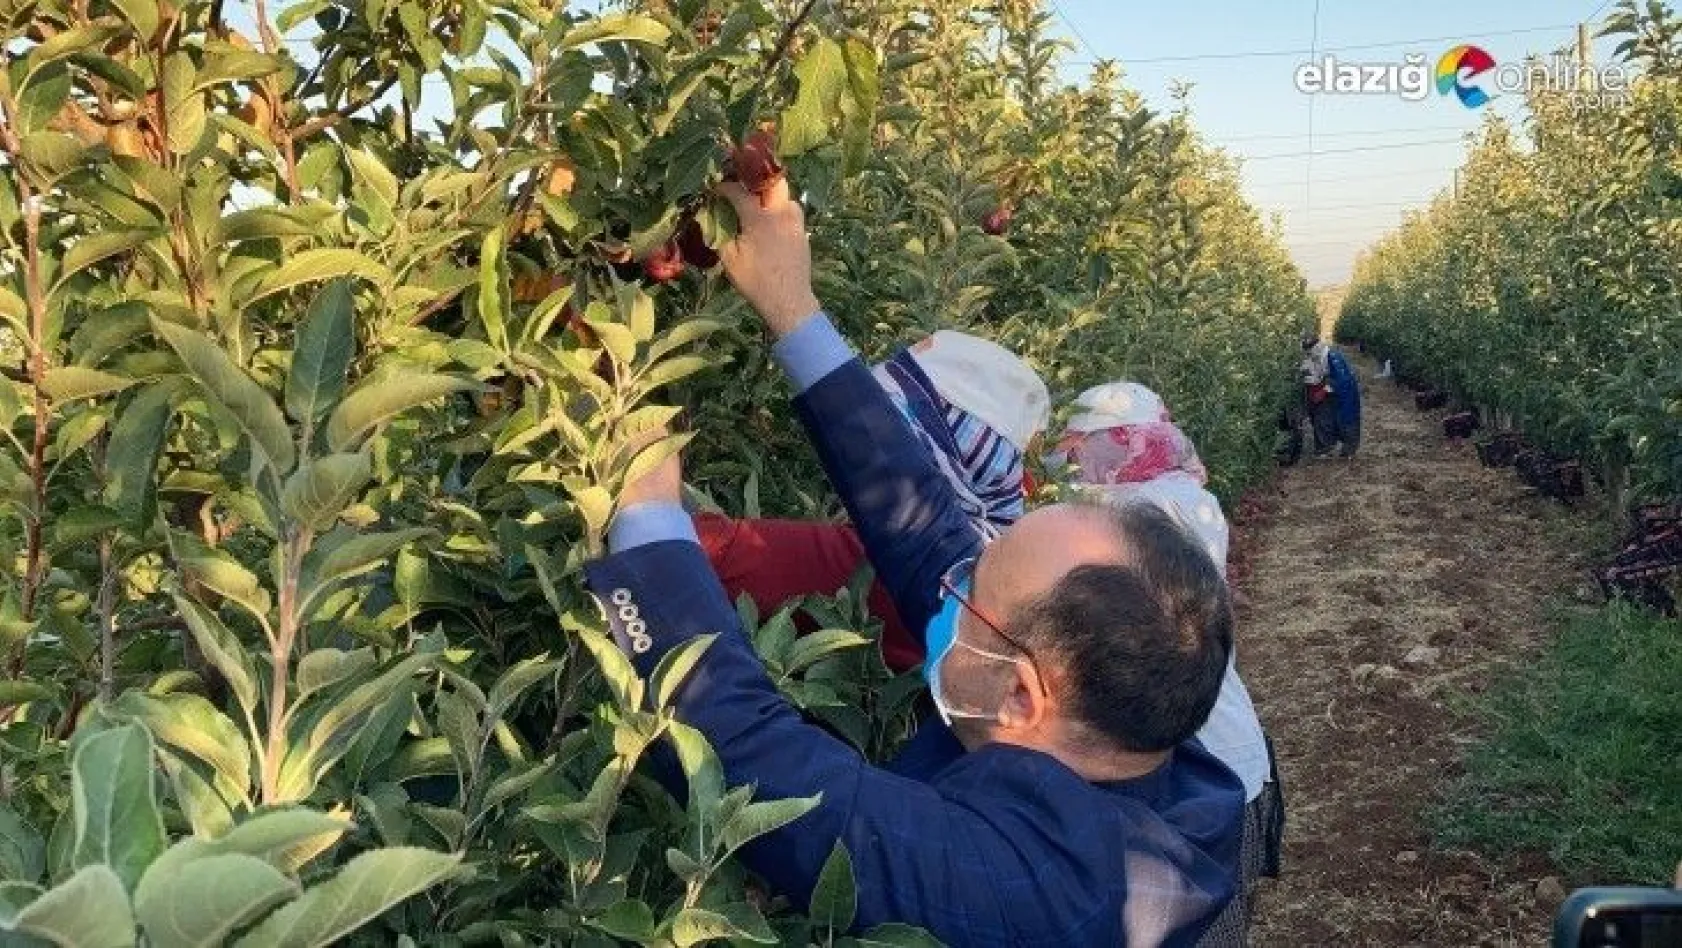 Vali Erkaya Yırık, işçilerle birlikte elma hasadına katıldı